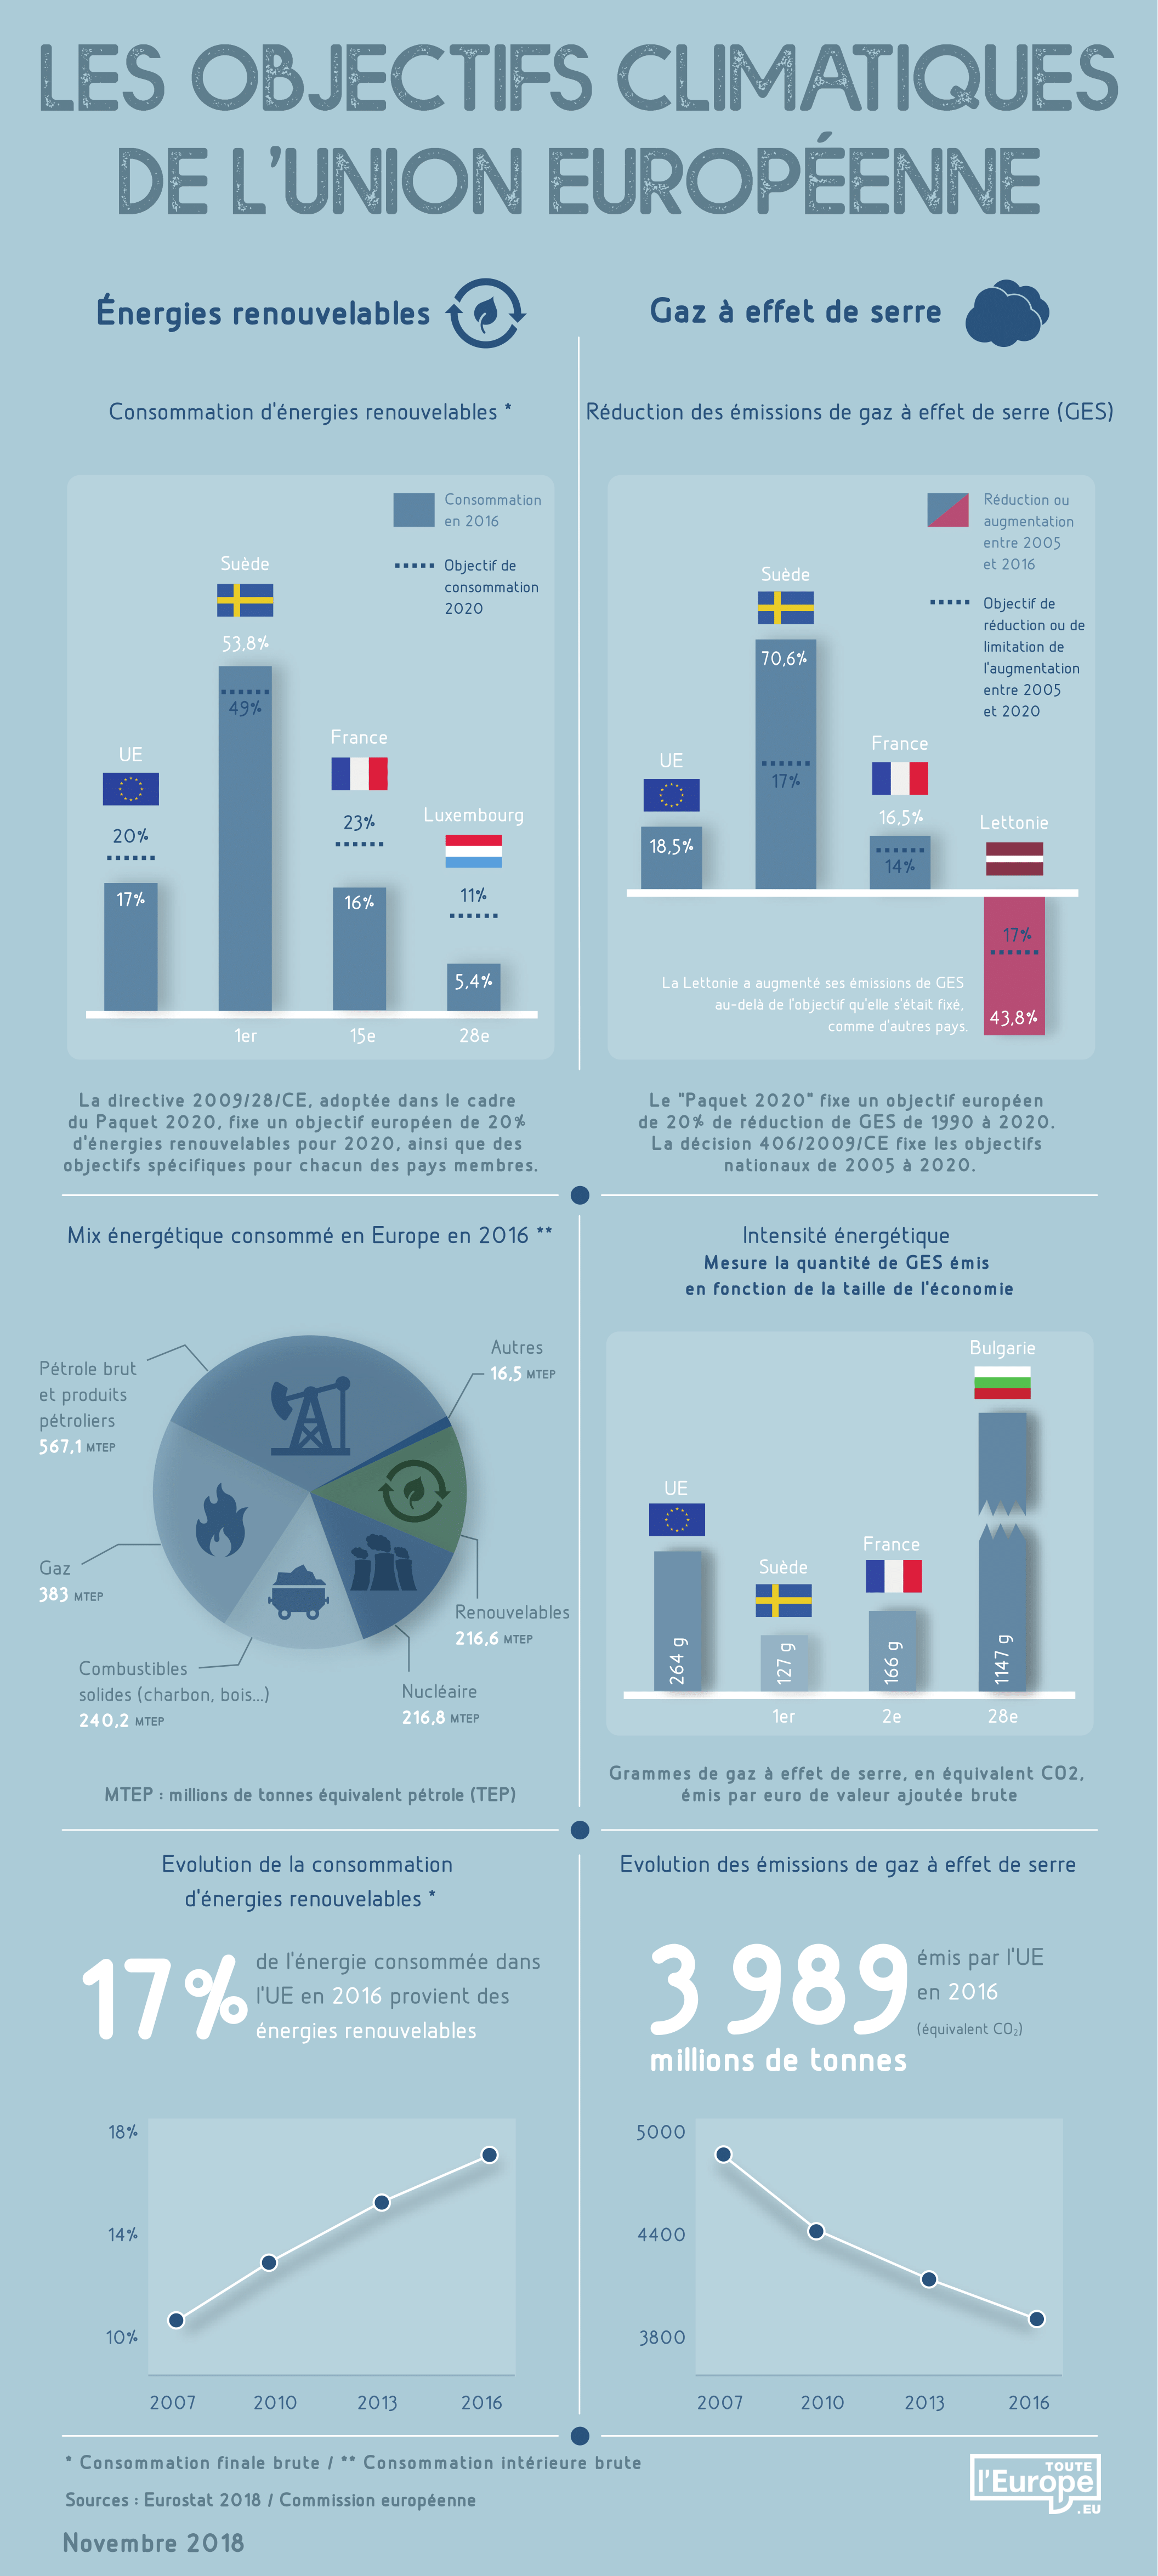 Les objectifs climatiques de l'Union européenne (infographie)